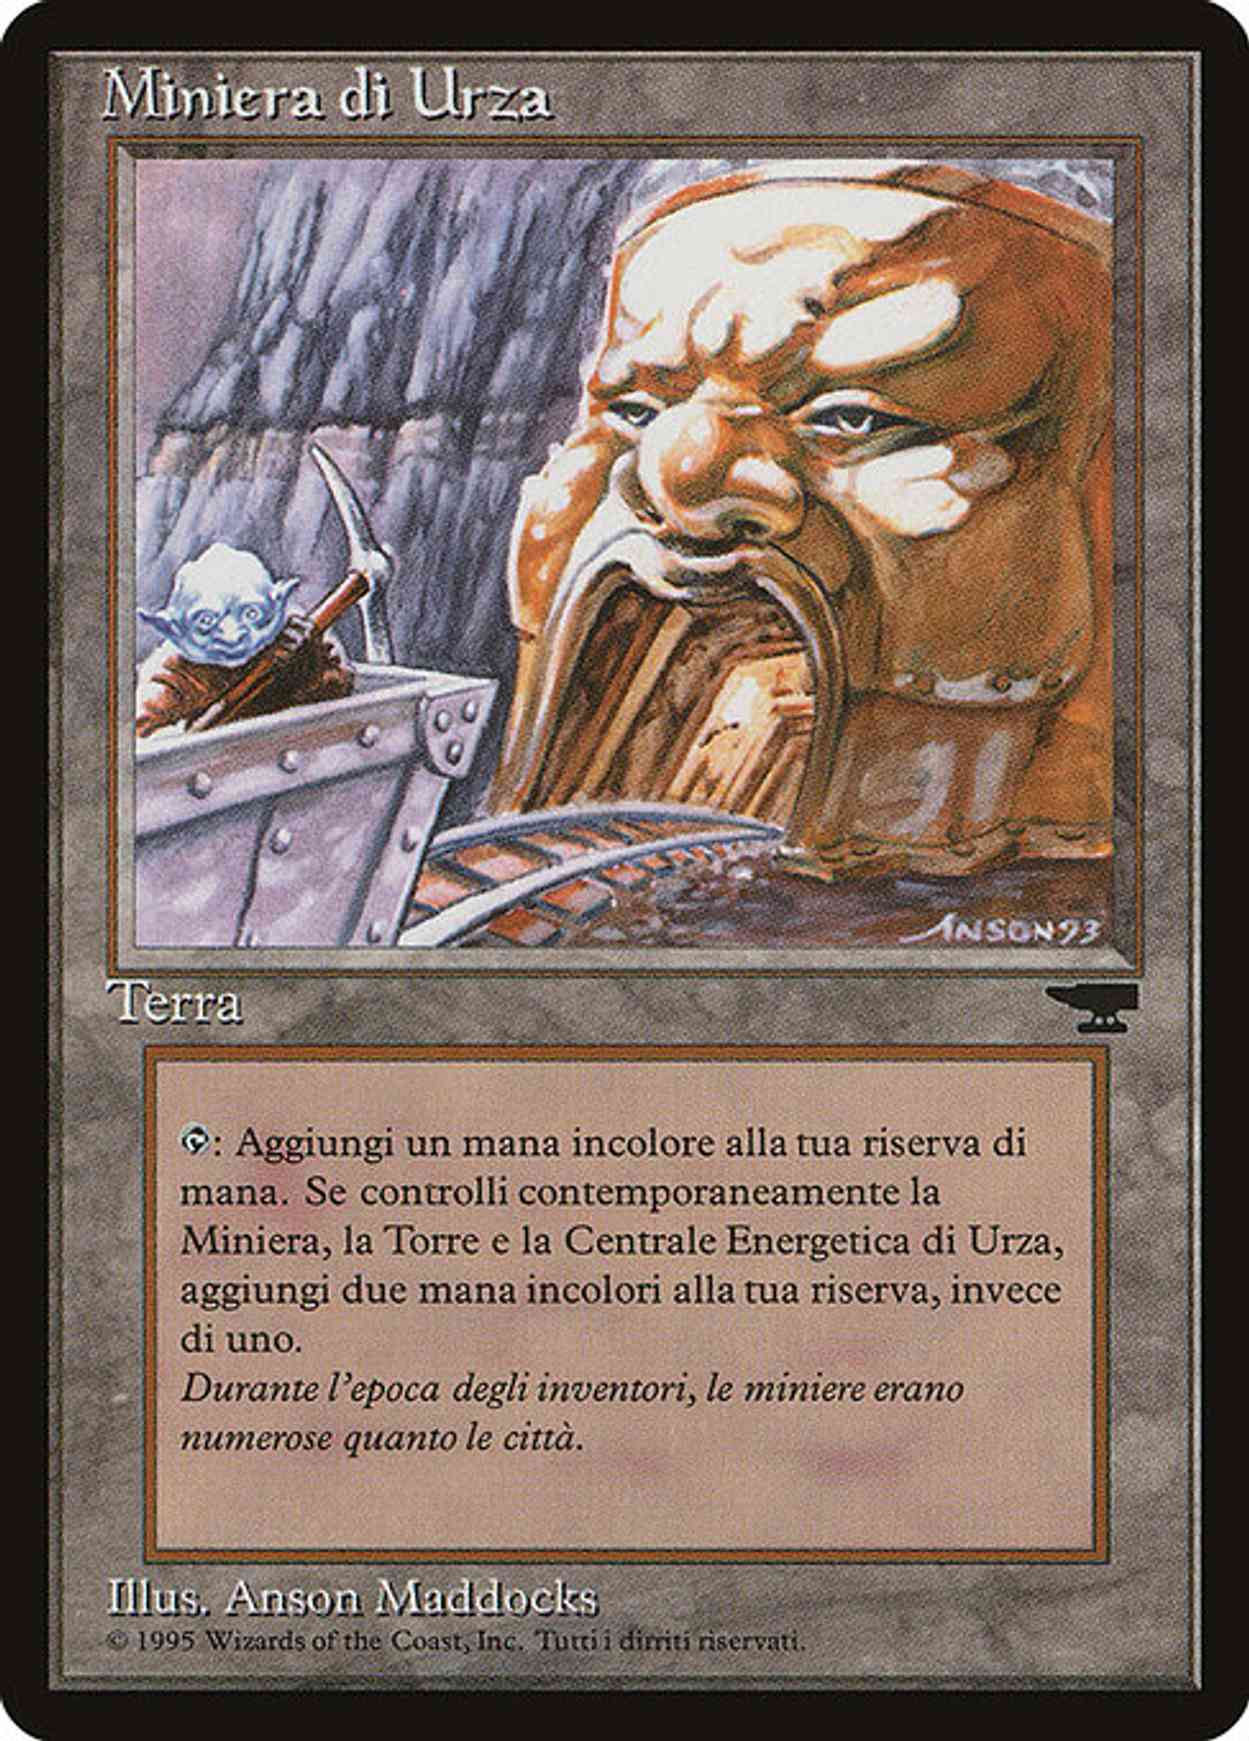 Urza's Mine (Mouth) (Italian) - "Miniera di Urza" magic card front